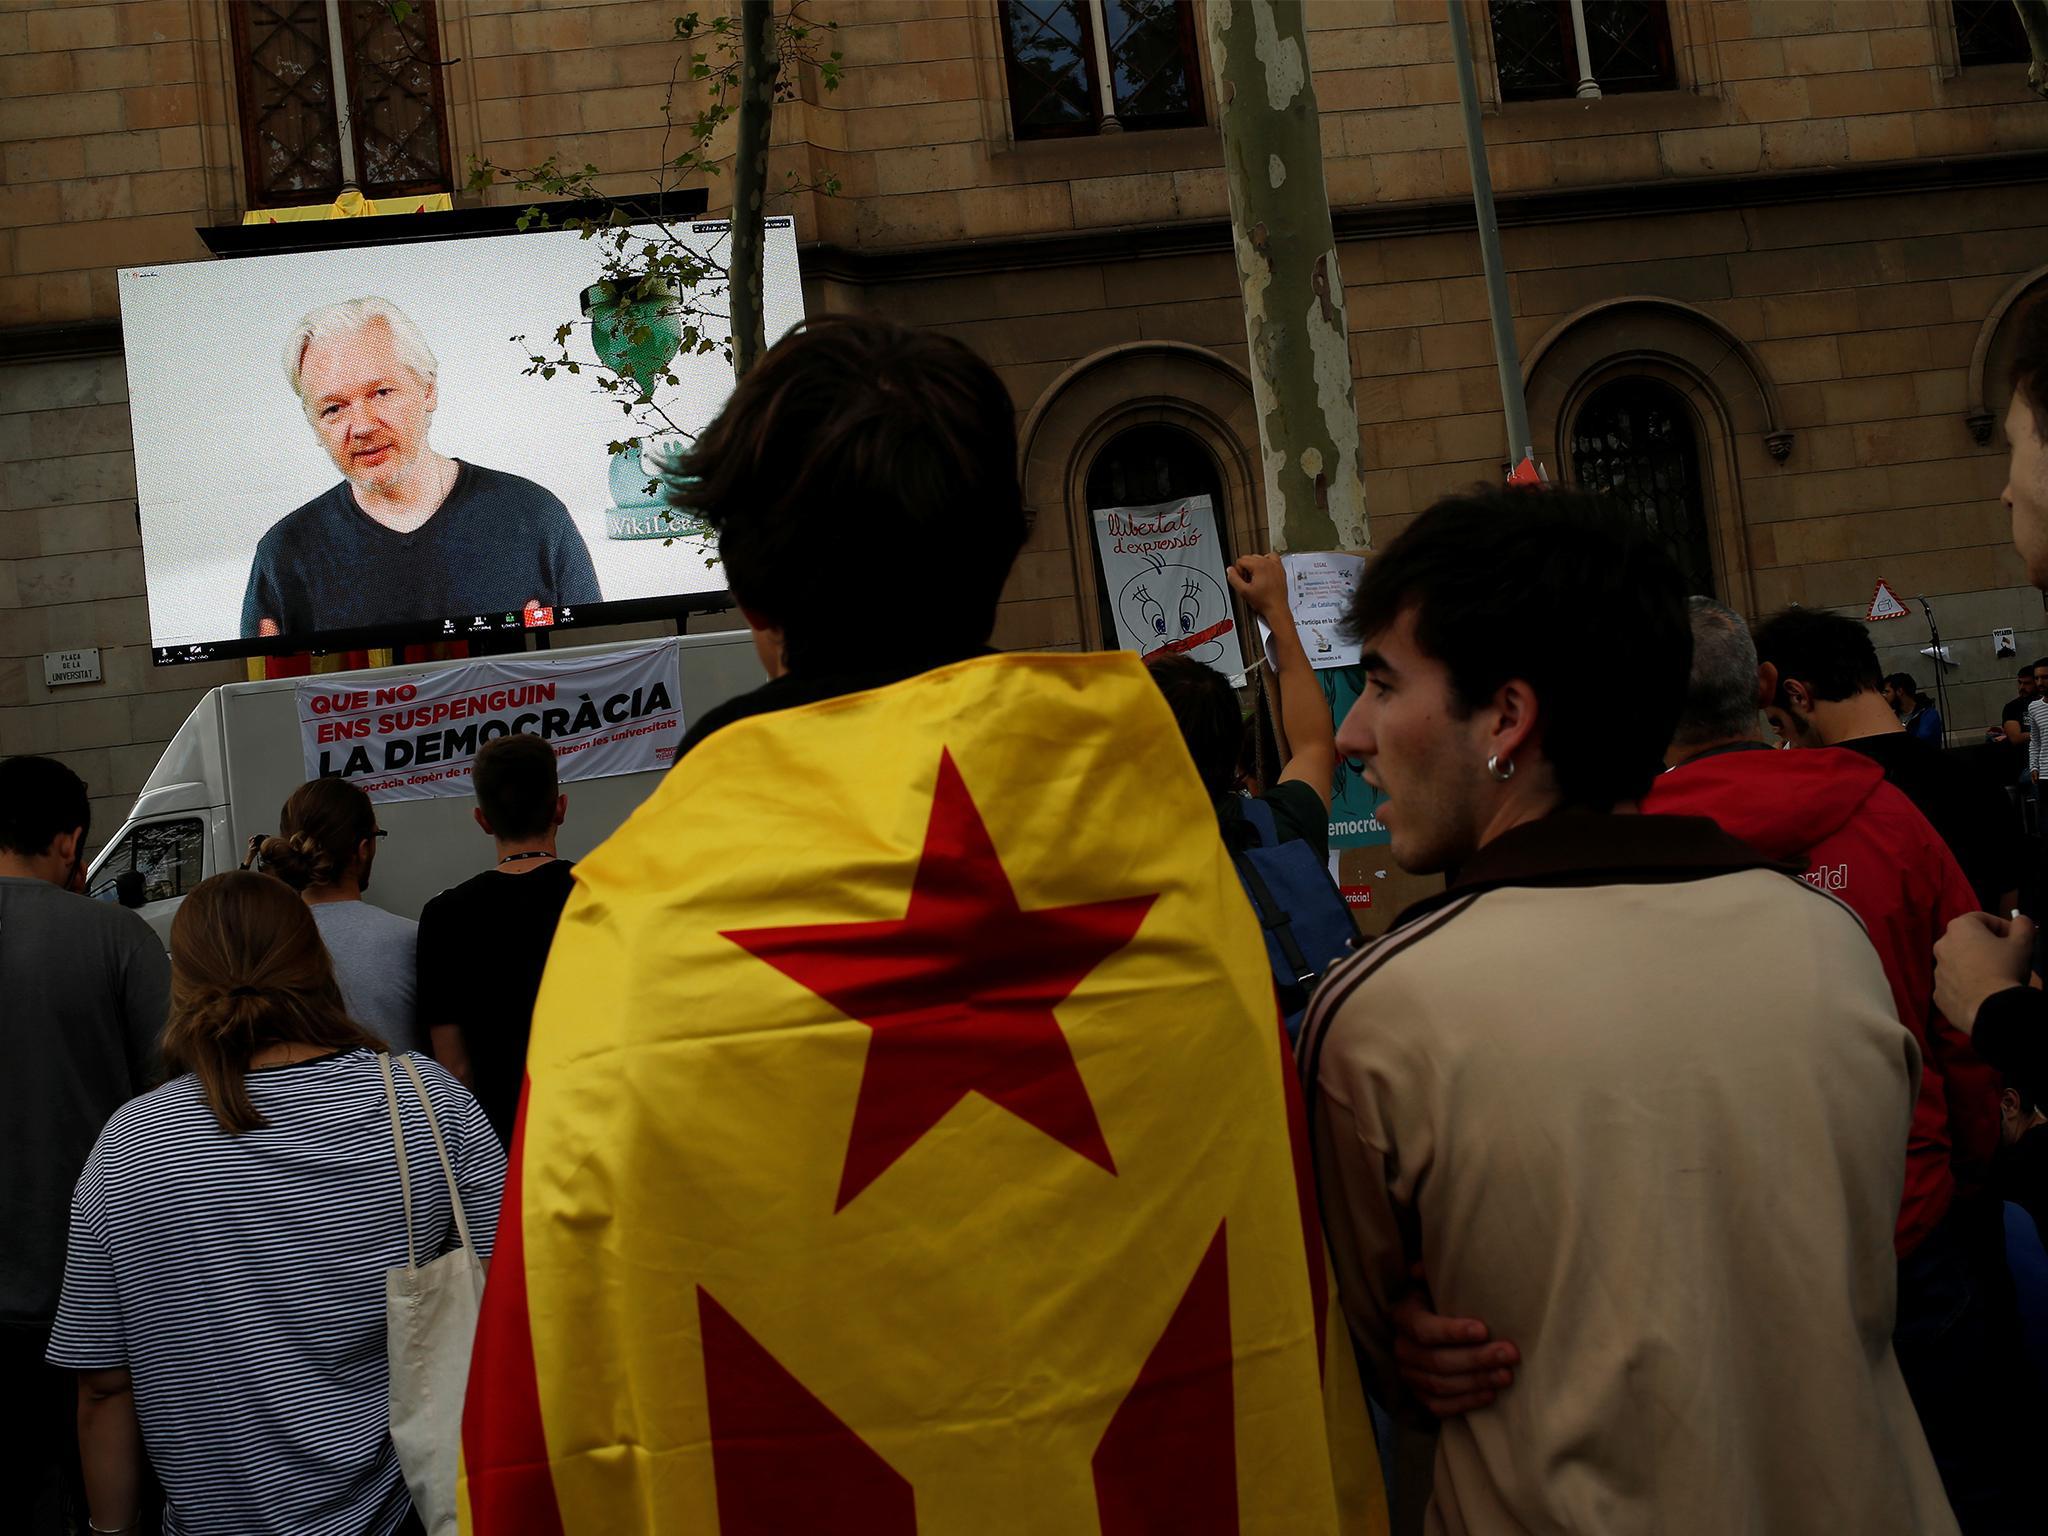 Wikileaks founder Julian Assange on a screen in Barcelona